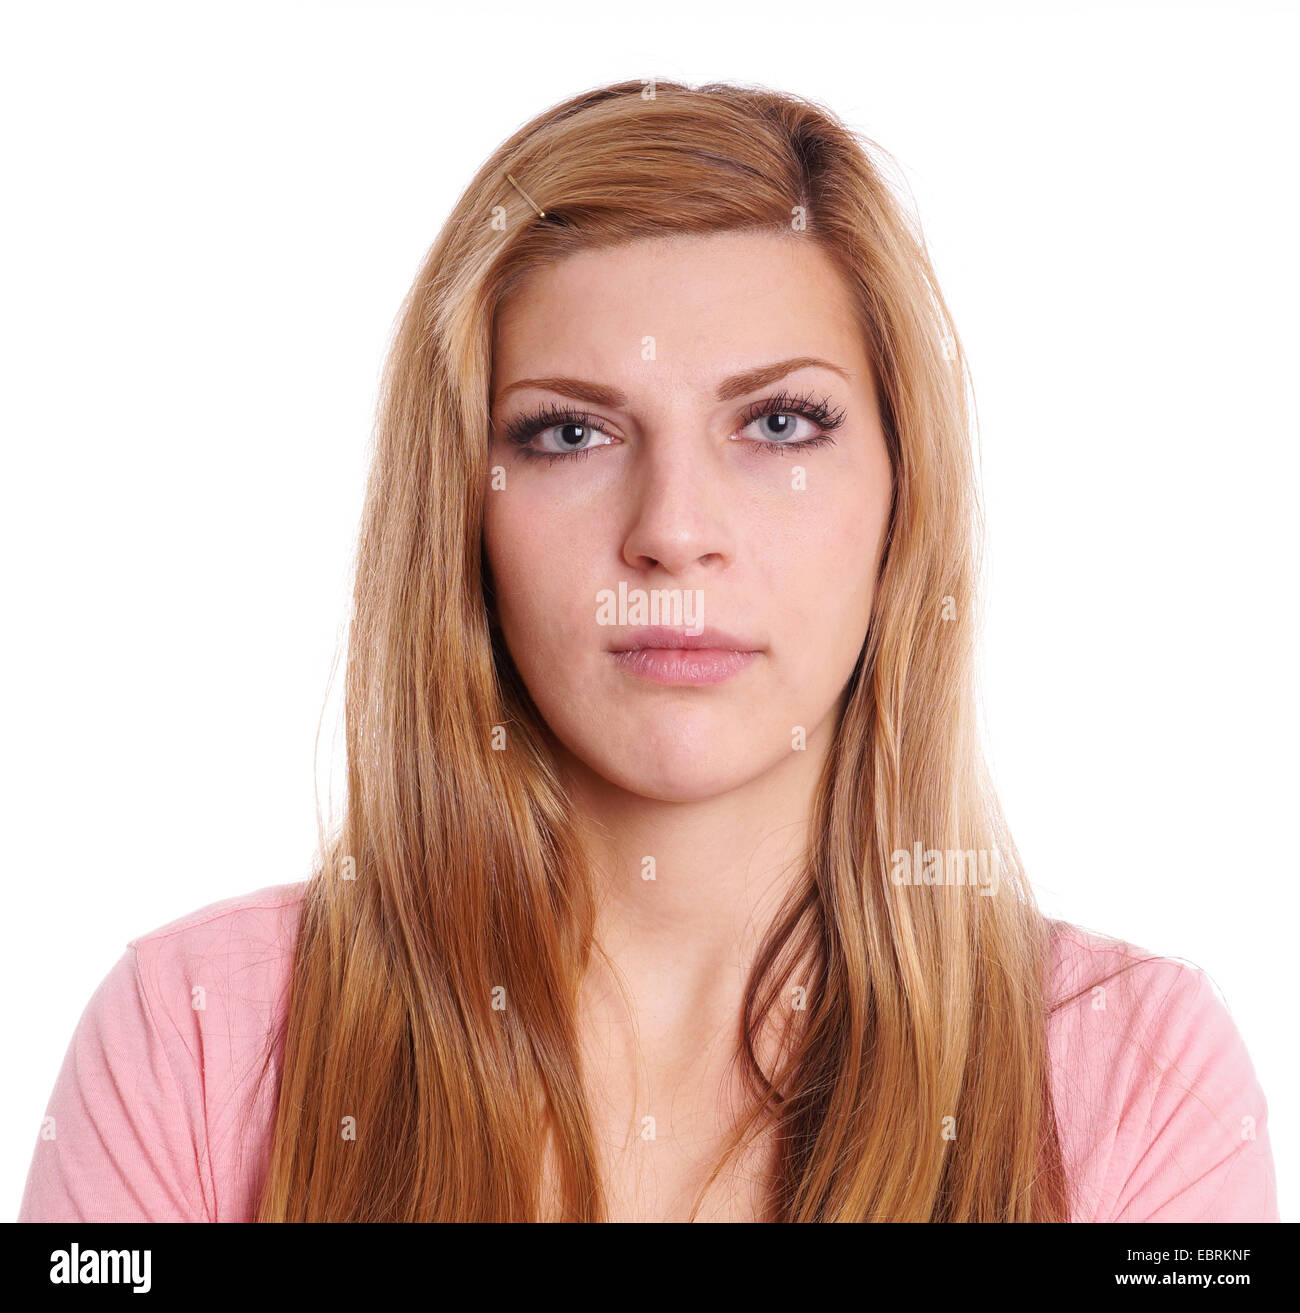 Mujer joven con expresión neutra headshot Foto de stock